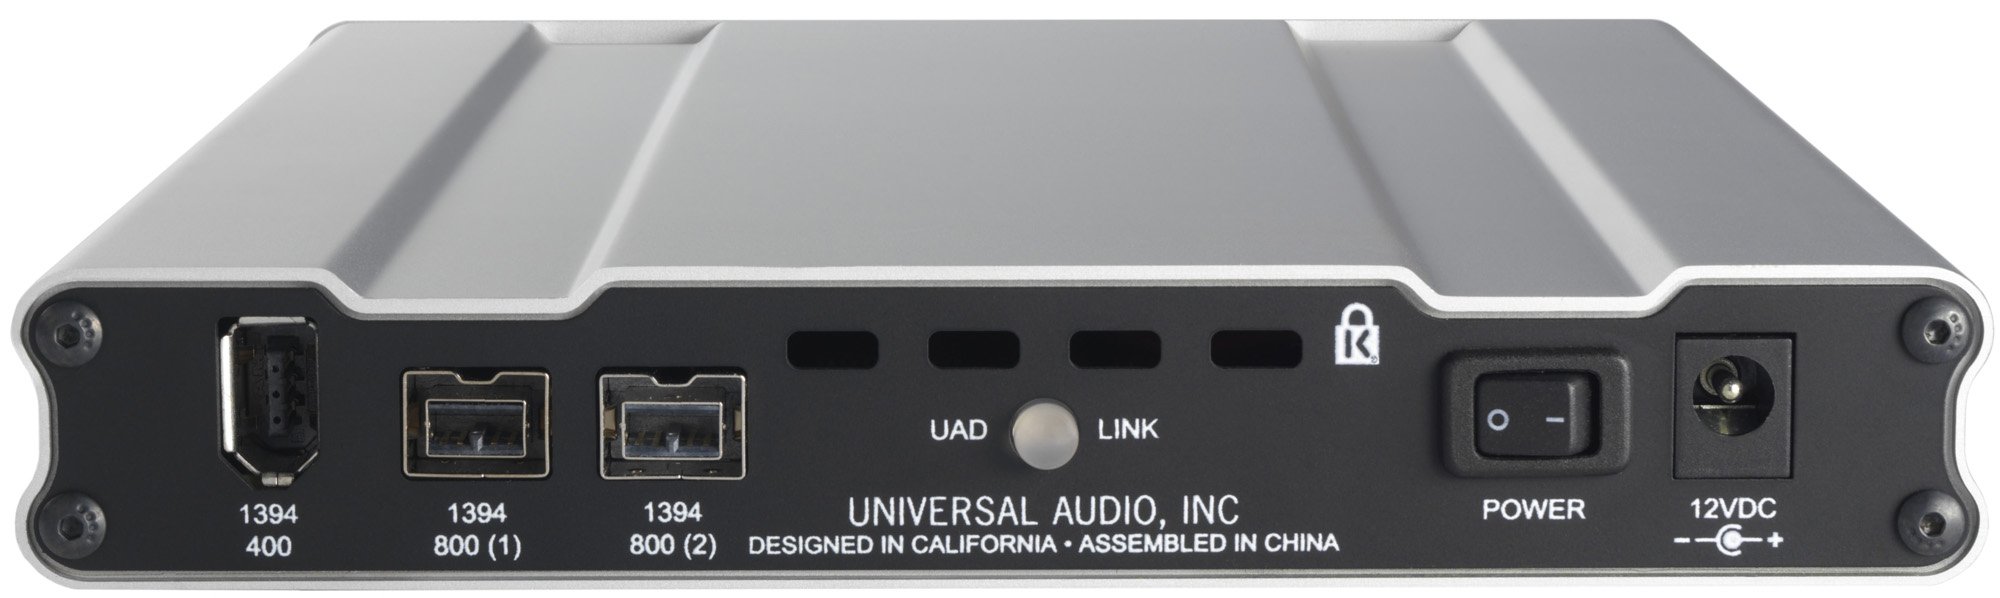   Universal Audio UAD-2 Satellite QUAD Core